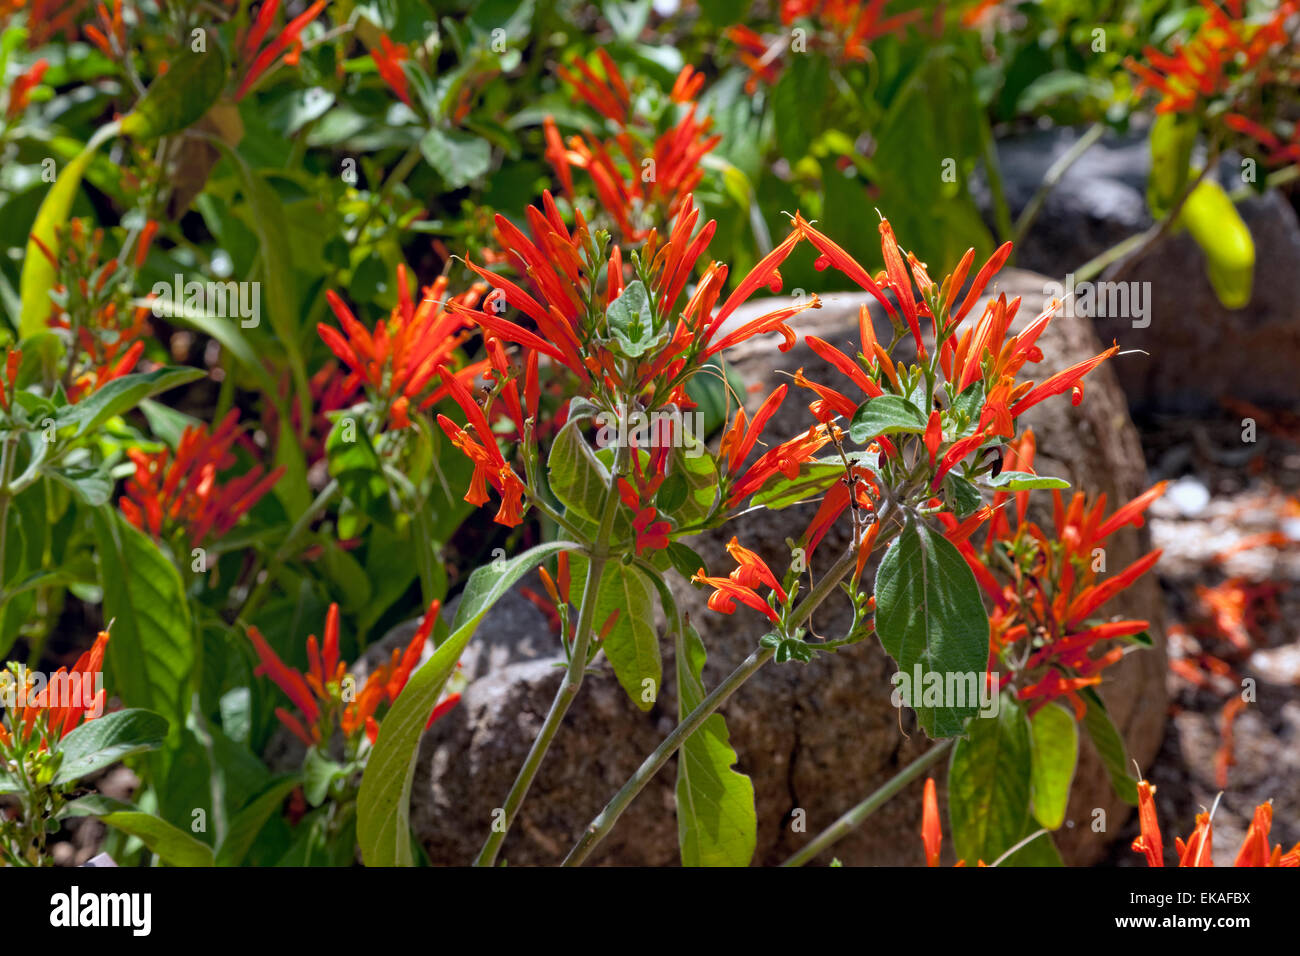 Justicia spicigera - mexicaine de chèvrefeuille, mohintli ou pétard bush, est un arbuste à feuillage persistant. Originaire d'Amérique centrale Banque D'Images